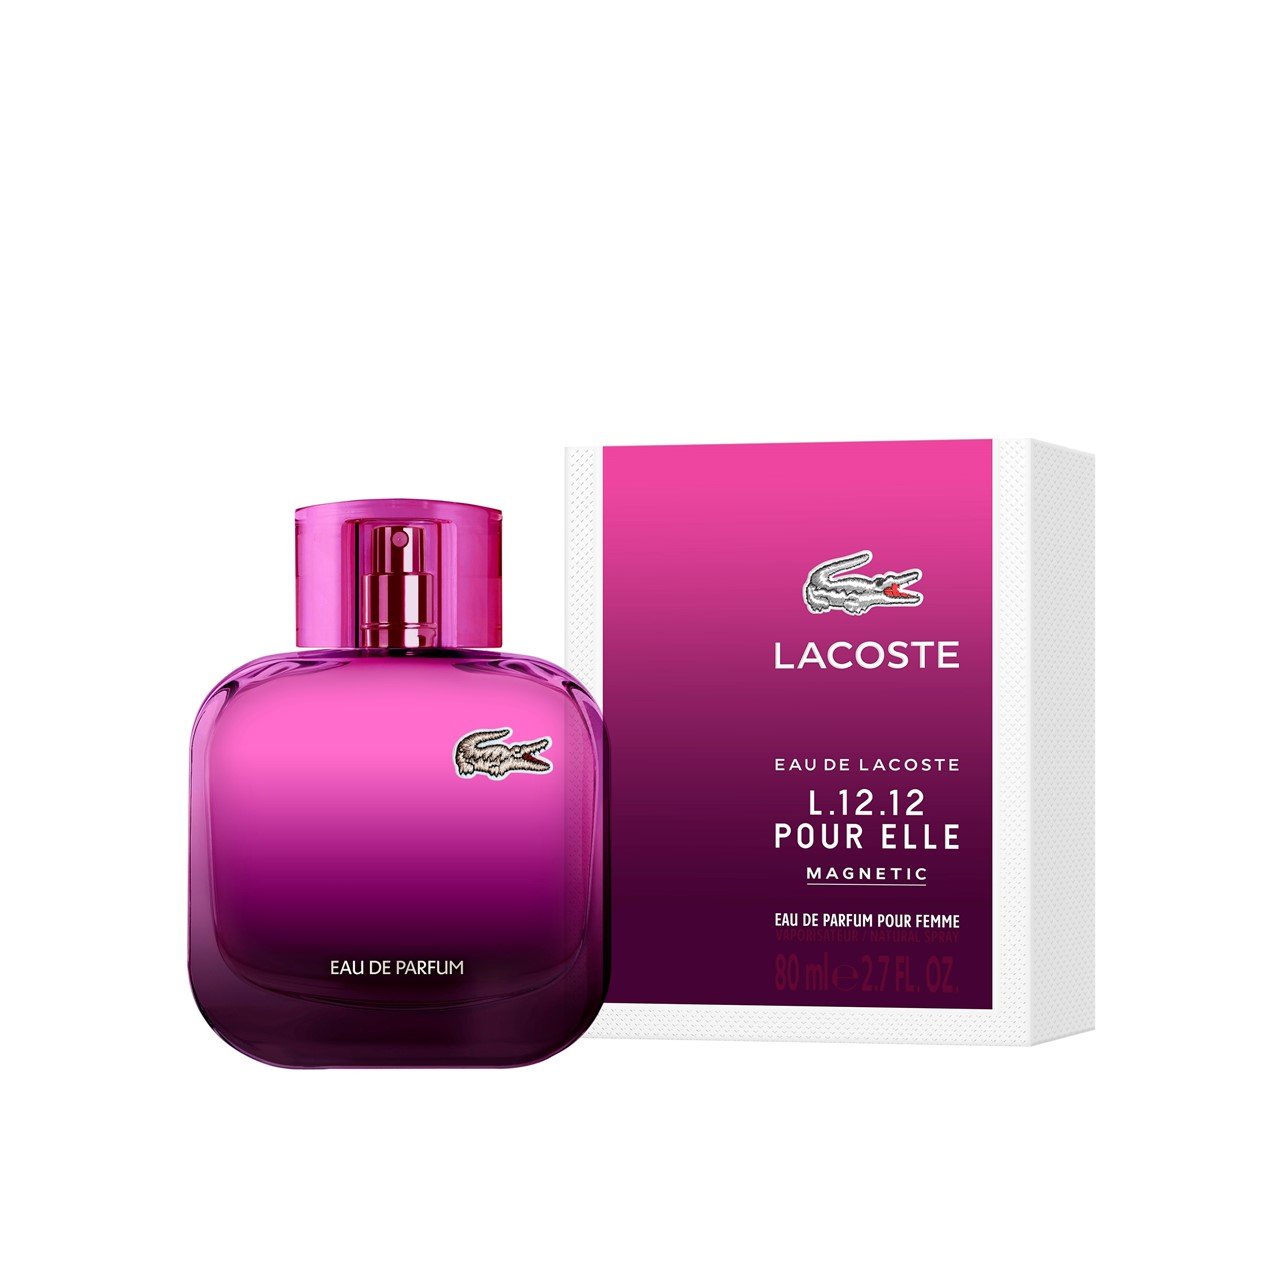 Lacoste L.12.12 Pour Elle Magnetic Eau de Parfum 80ml